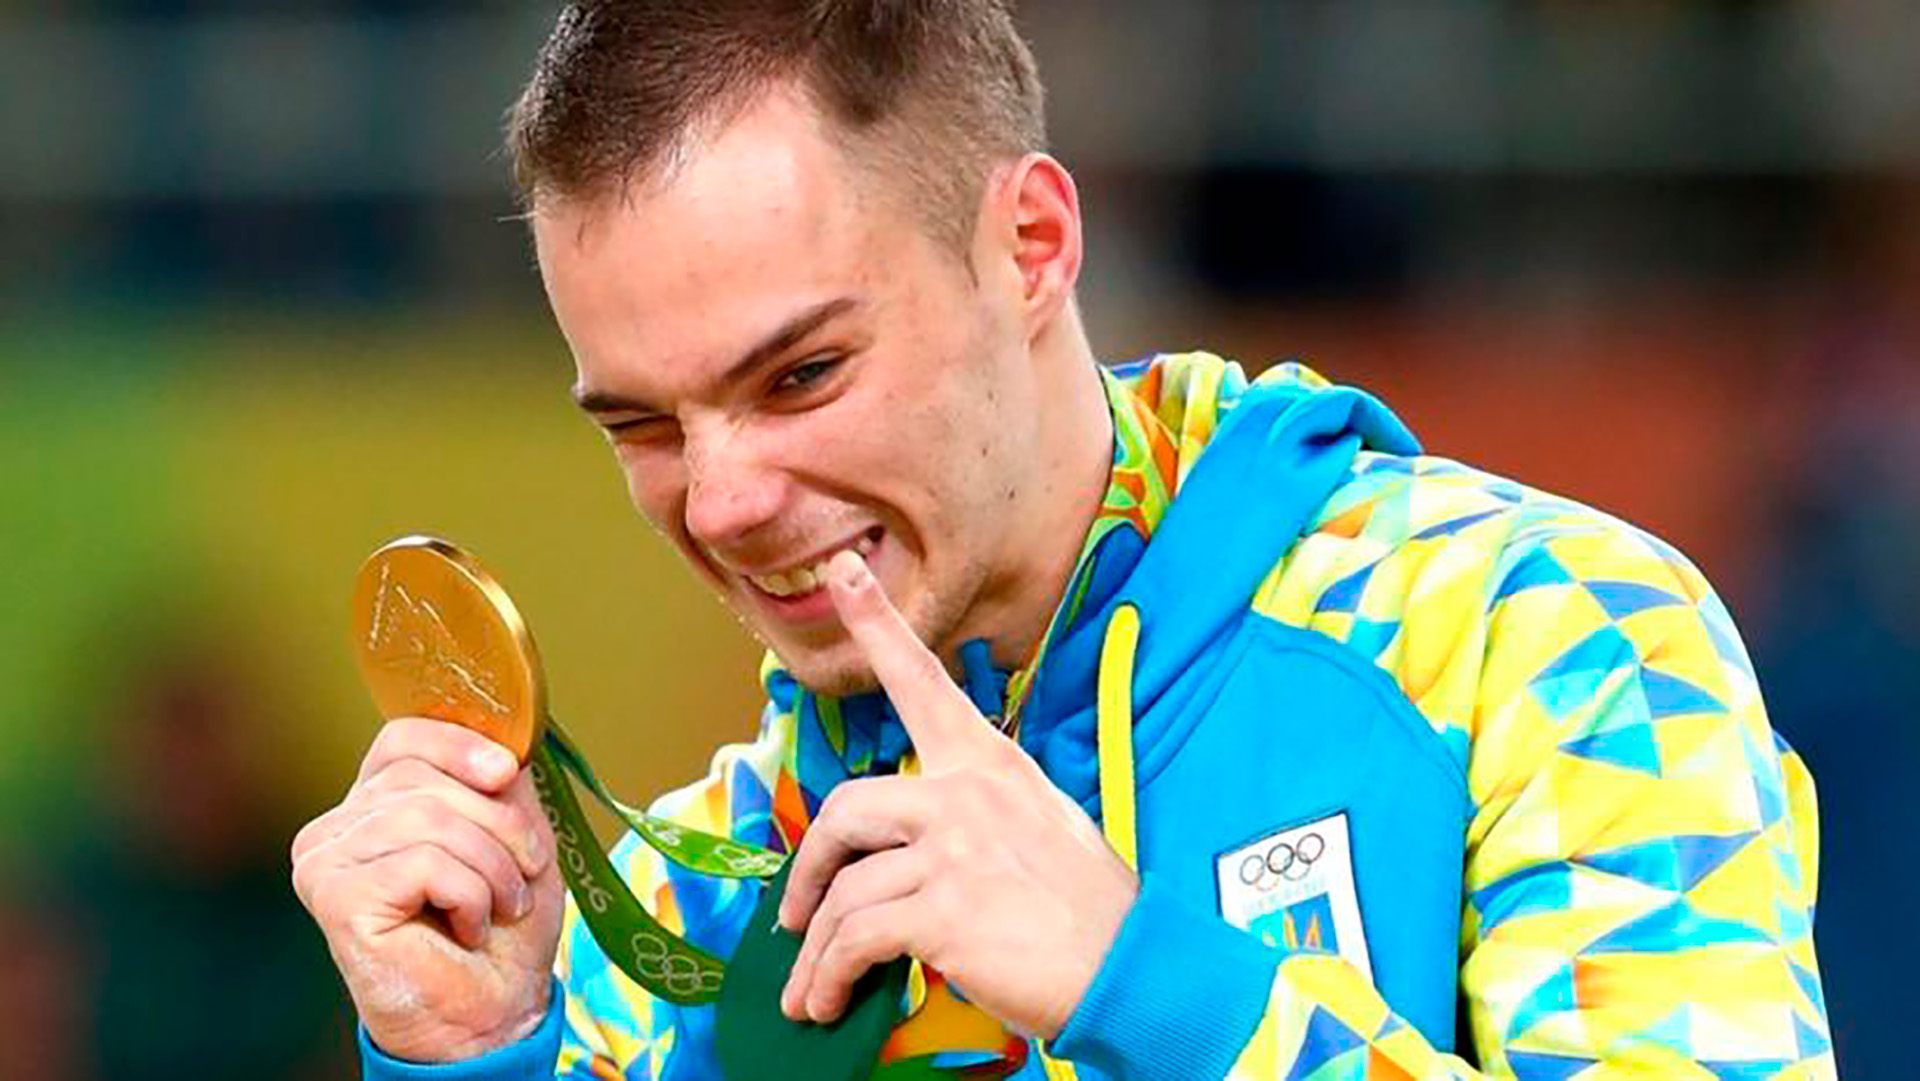 El TAS redujo la sanción por doping a famoso gimnasta ucraniano y ya puede volver a competir